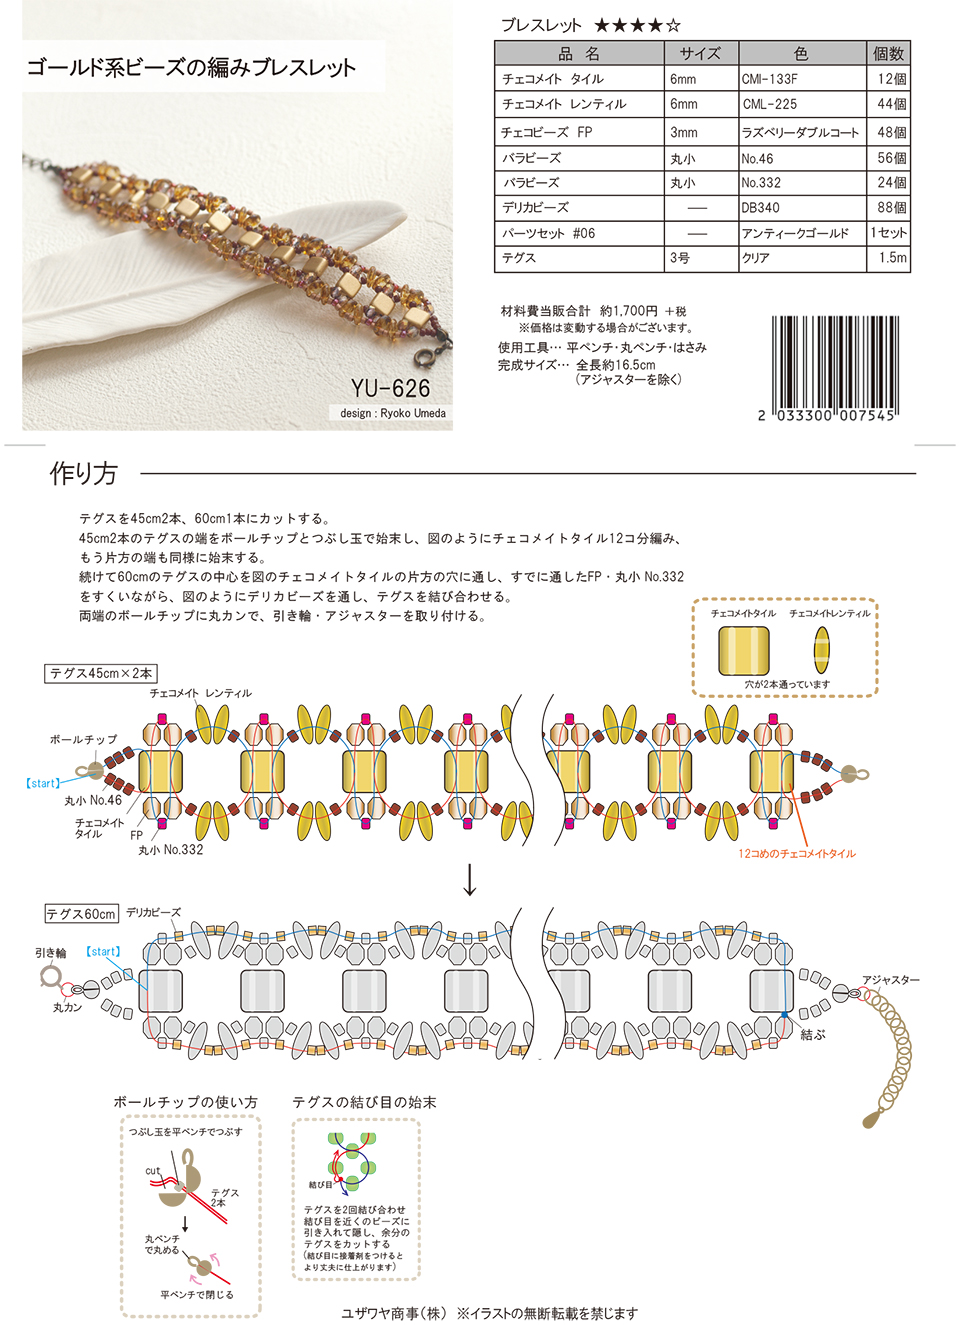 YU-626ゴールド系ビーズの編みブレスレット_1.jpg